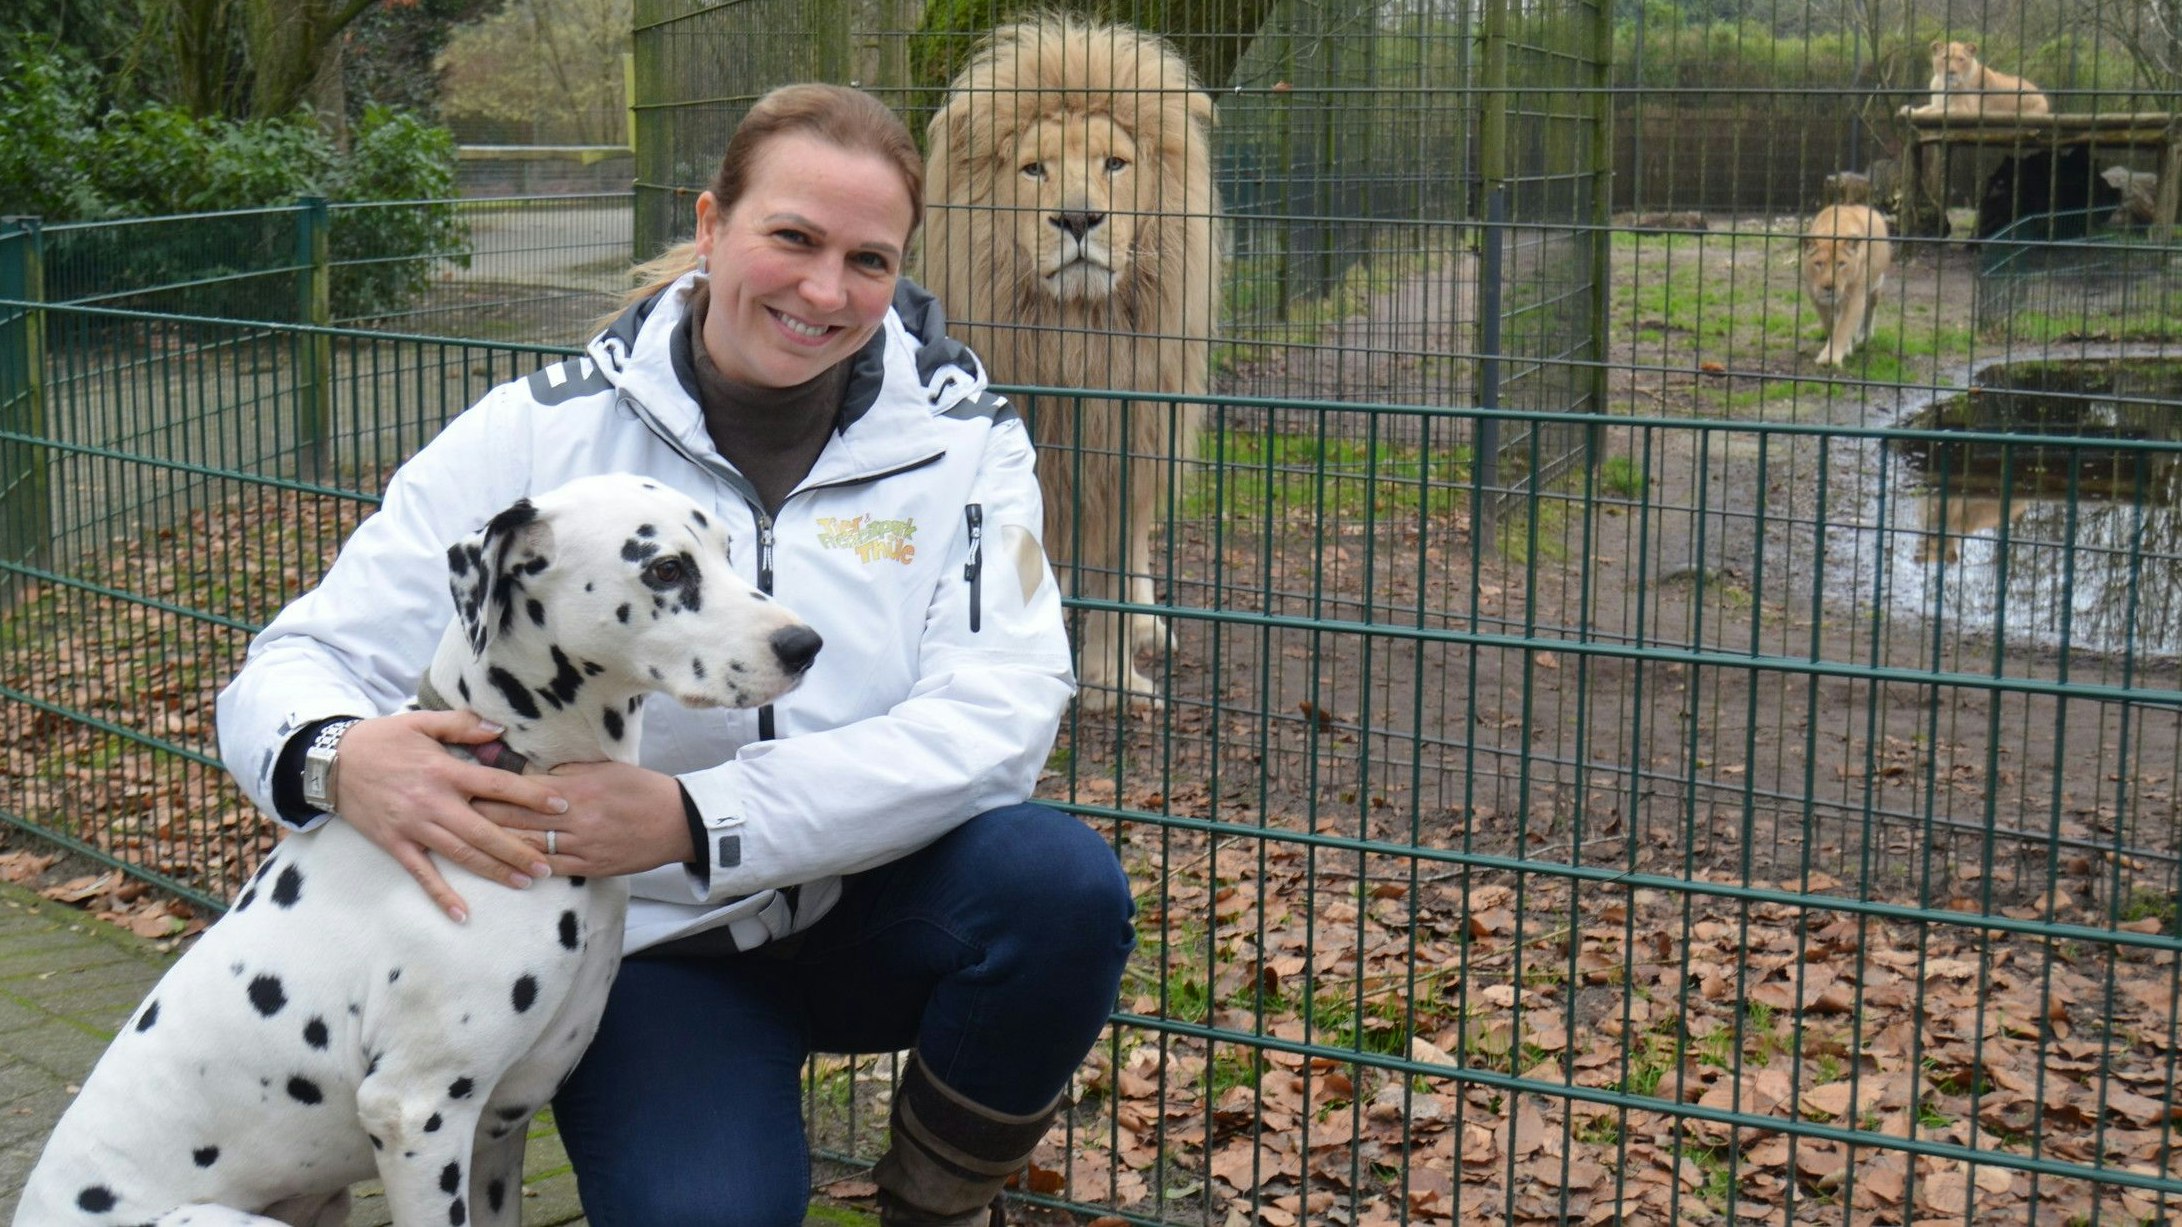 Tierpark-Chefin Alexandra Grothaus mit ihrem Dalmatiner Cooper vor dem Löwengehege. Löwe Spike blickt skeptisch. Foto: Fertig